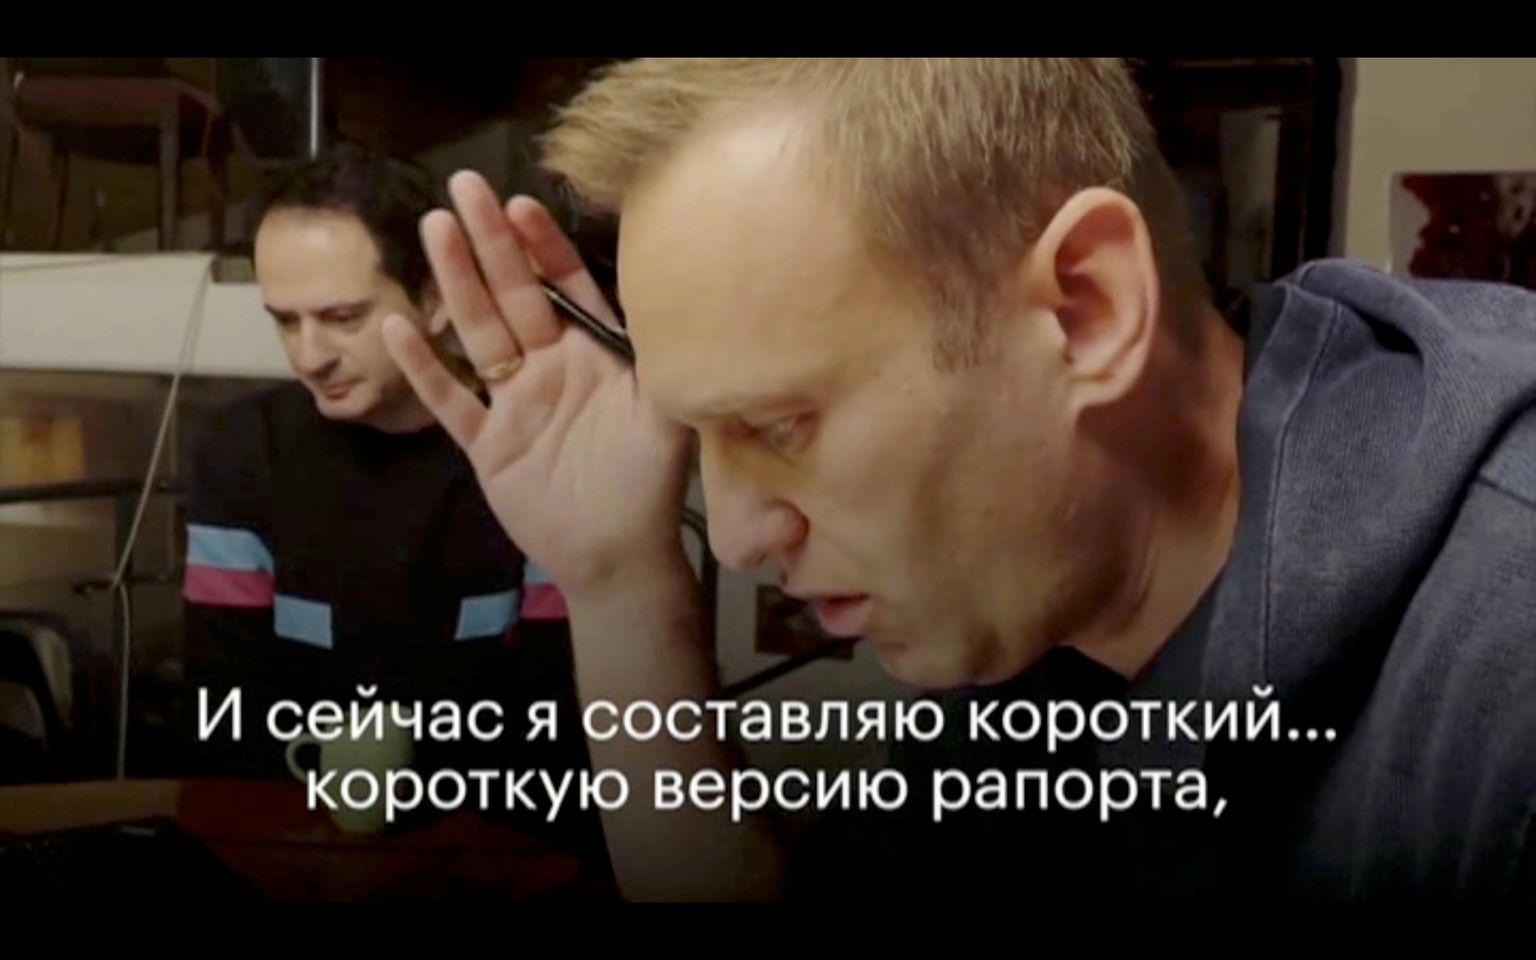 Kaader videost, millel Aleksei Navalnõid on näha rääkimas telefoni teel FSB agendi Konstantin Kudrjavtseviga. Navalnõi kehastus kõrgeks ametnikuks, saades oma mürgitamise kohta detailse info